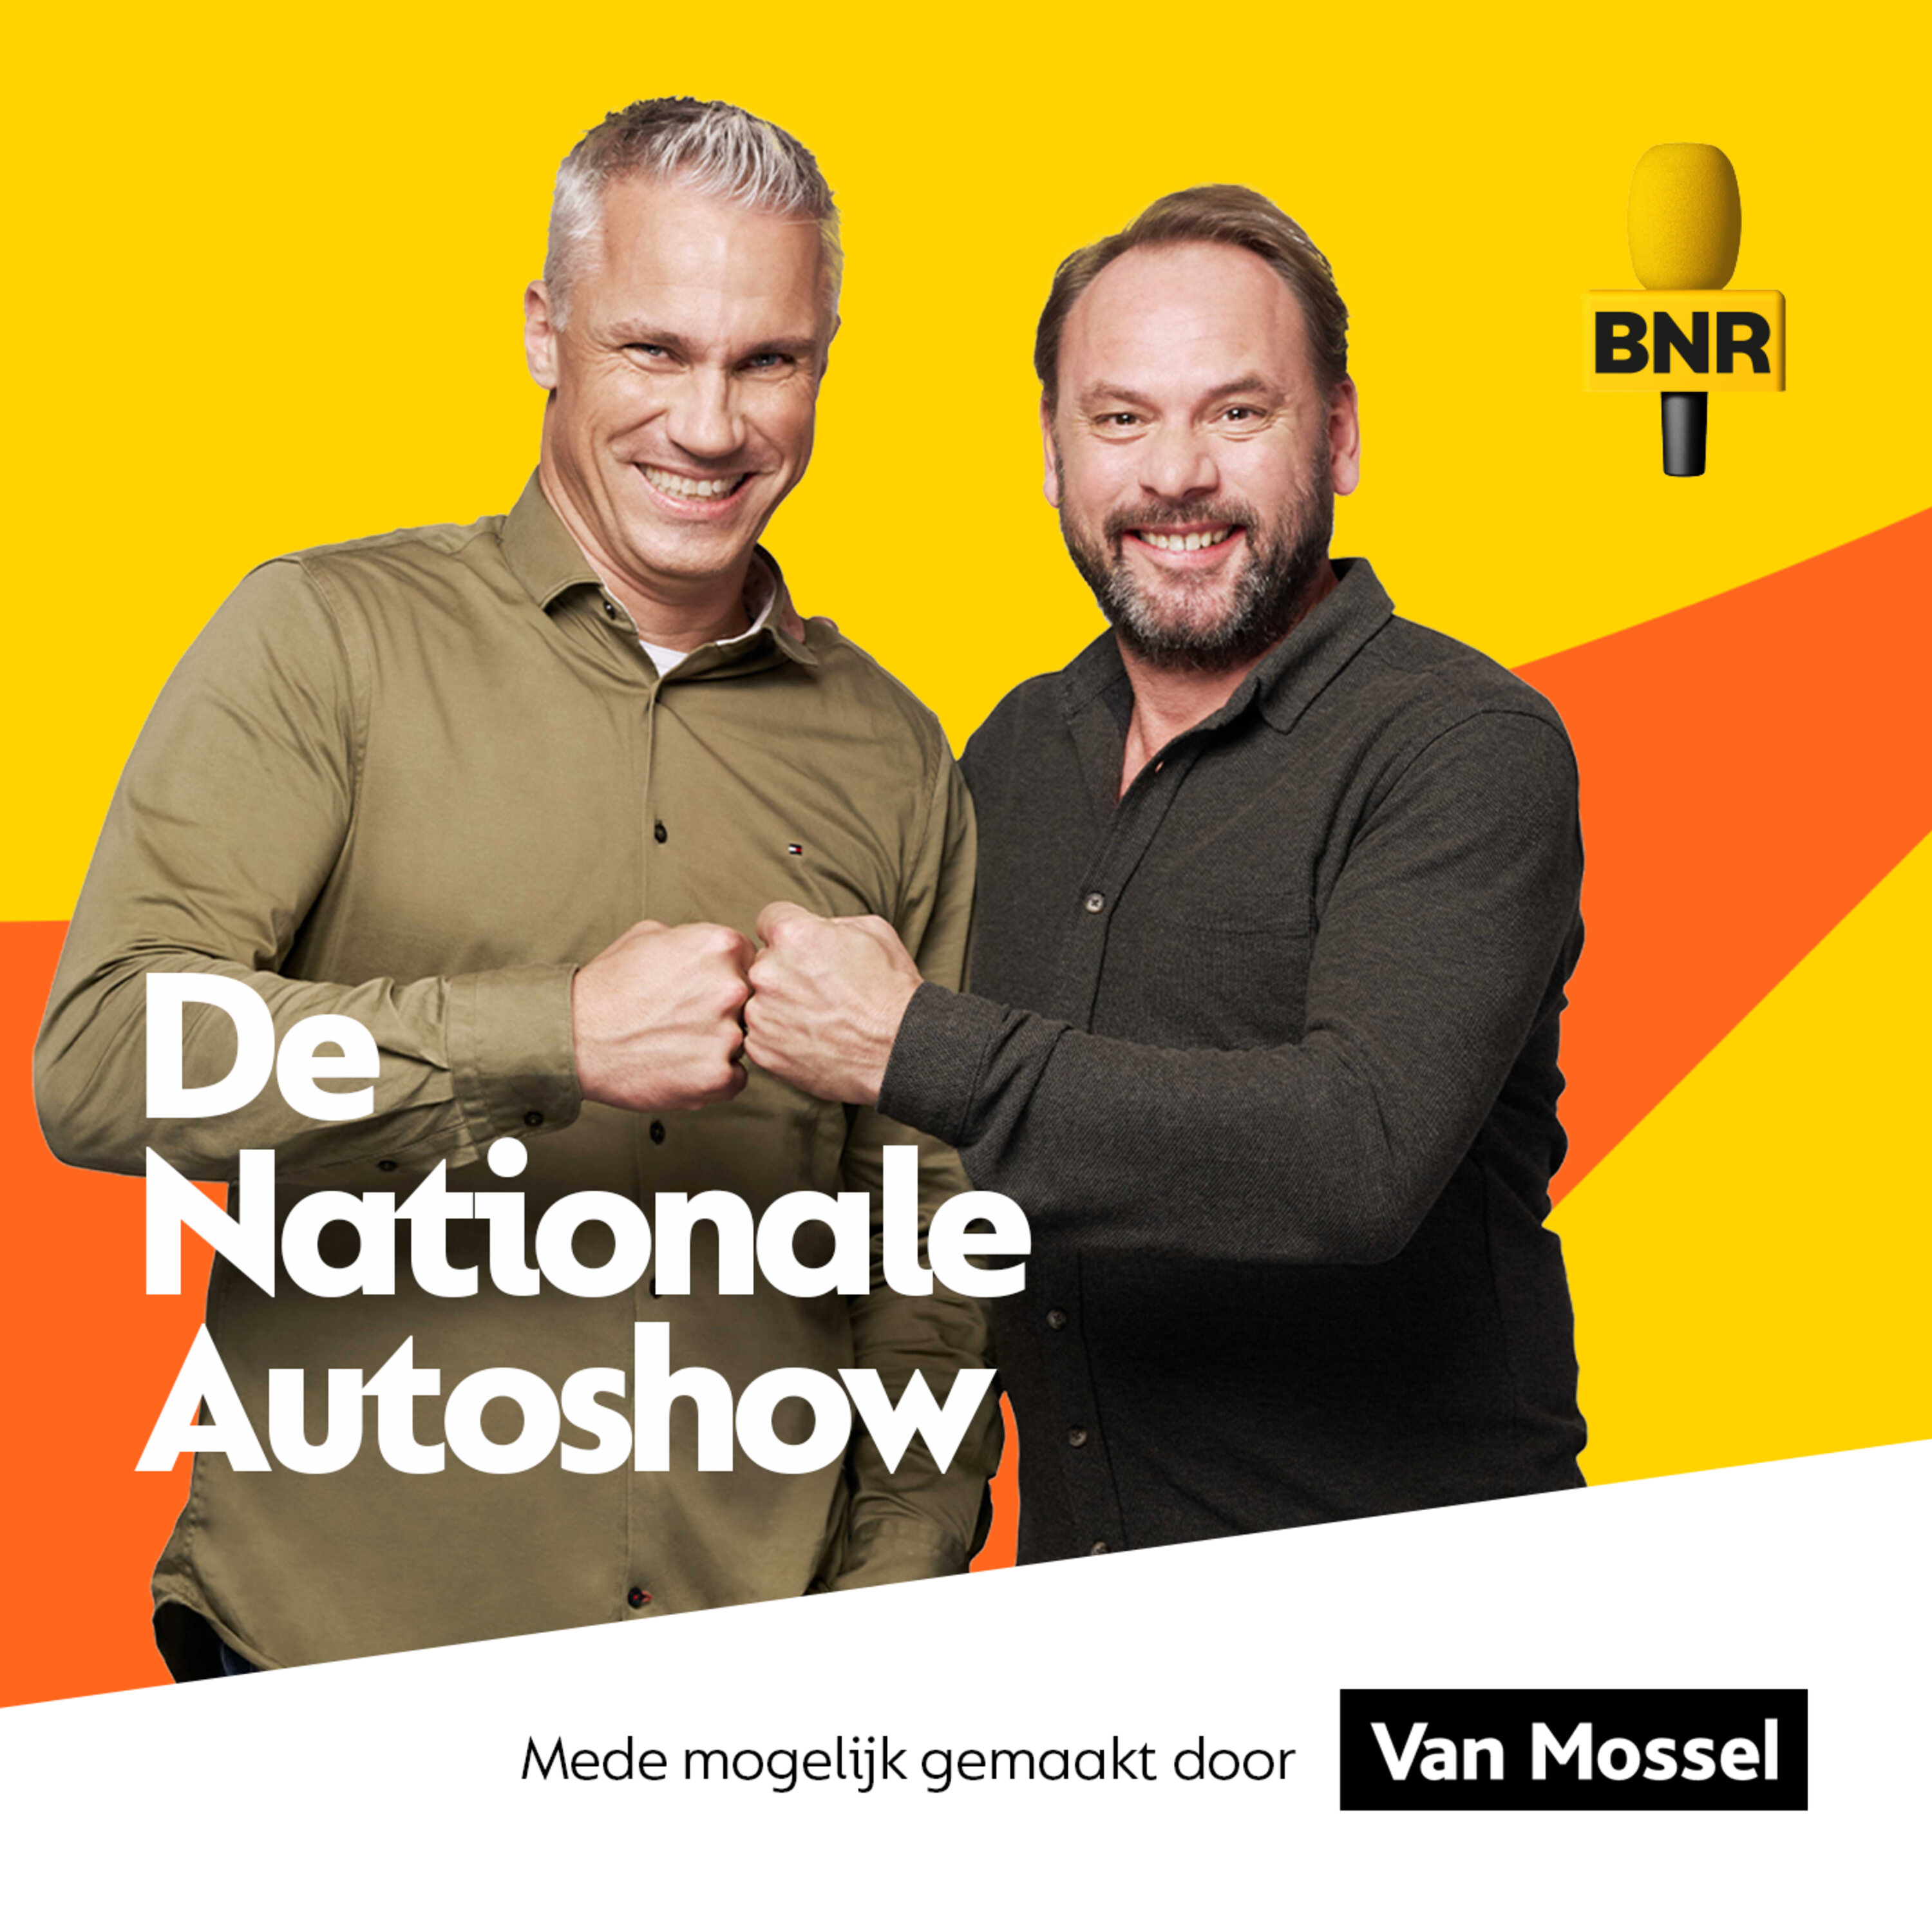 De Nationale Autoshow | BNR logo